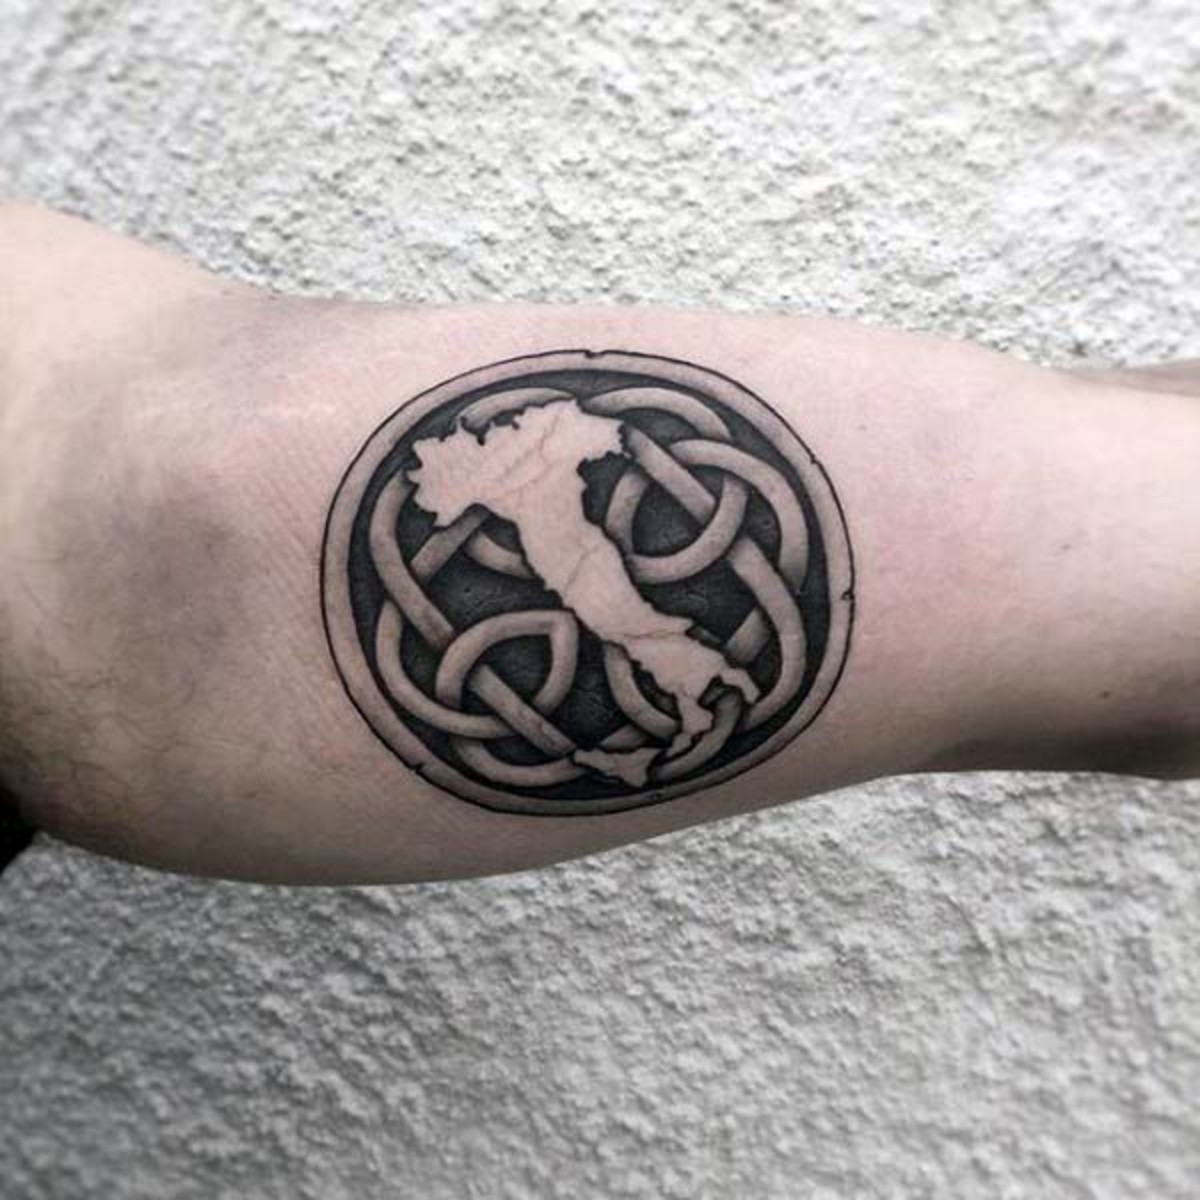 irsk-kort-med-knude-herre-indre-arm-tatoveringer